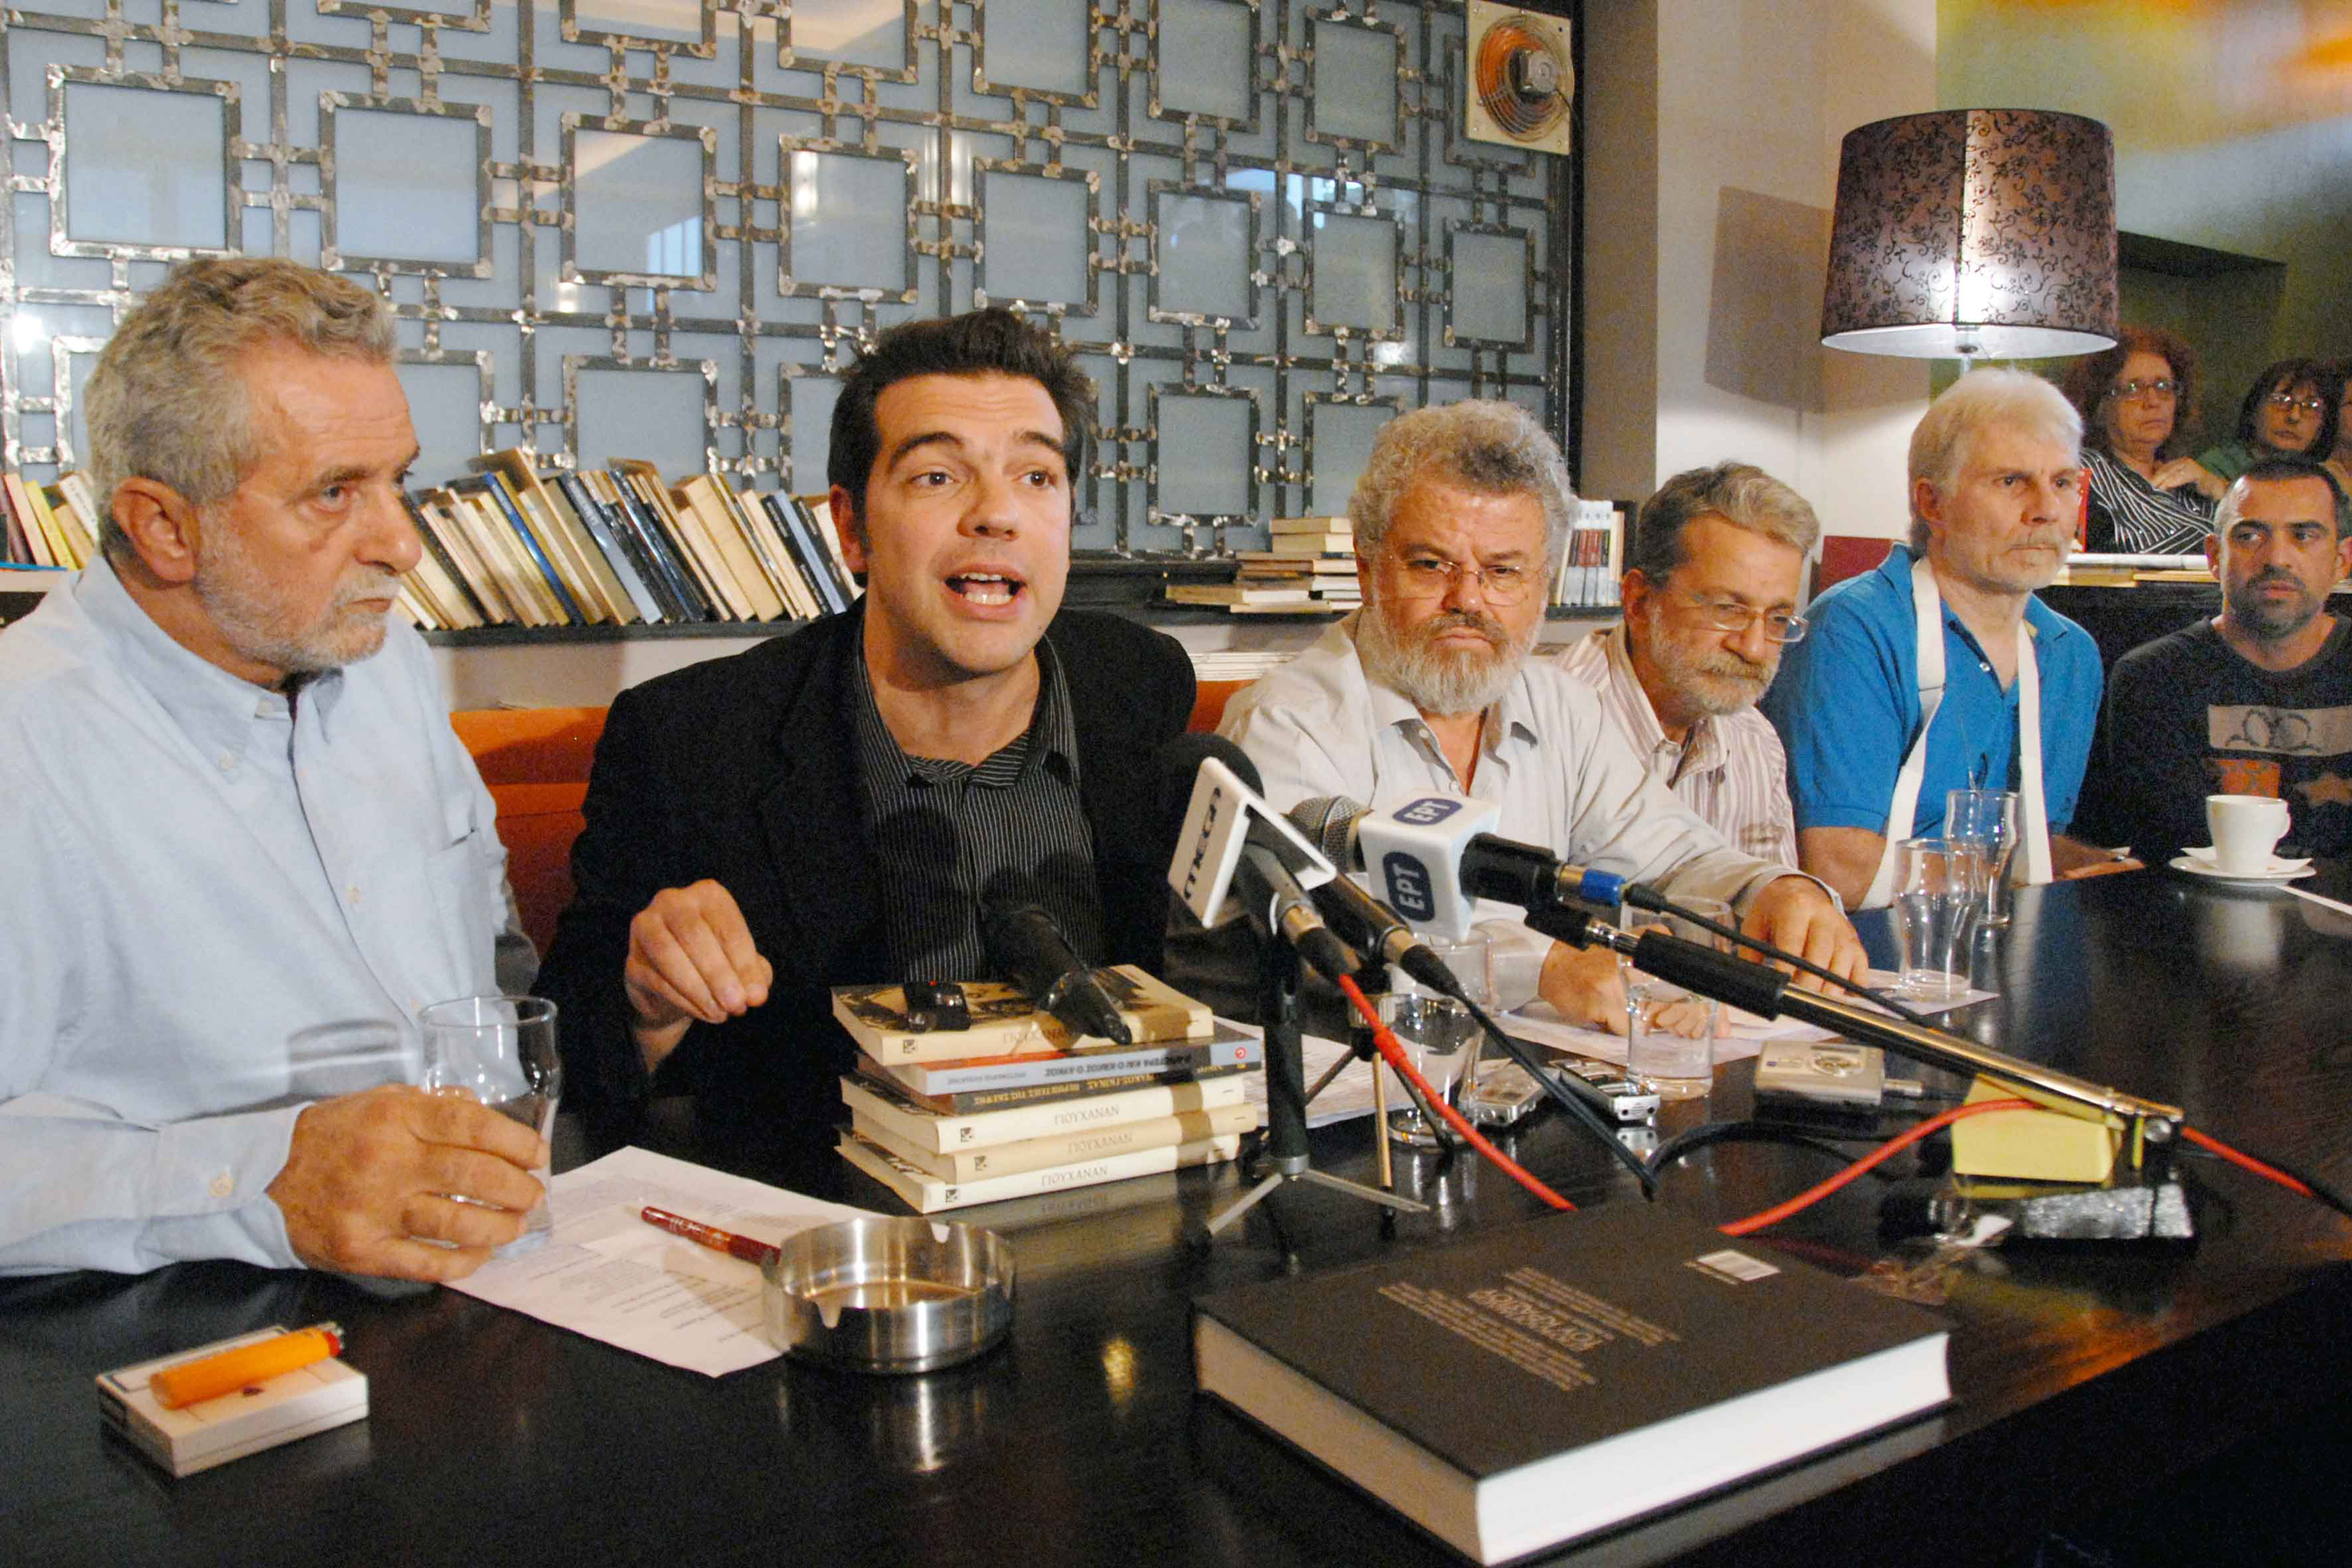 ΣΥΡΙΖΑ: «Σόου επίδειξης αυταρχισμού» χαρακτηρίζει τα γεγονότα στην Υδρα